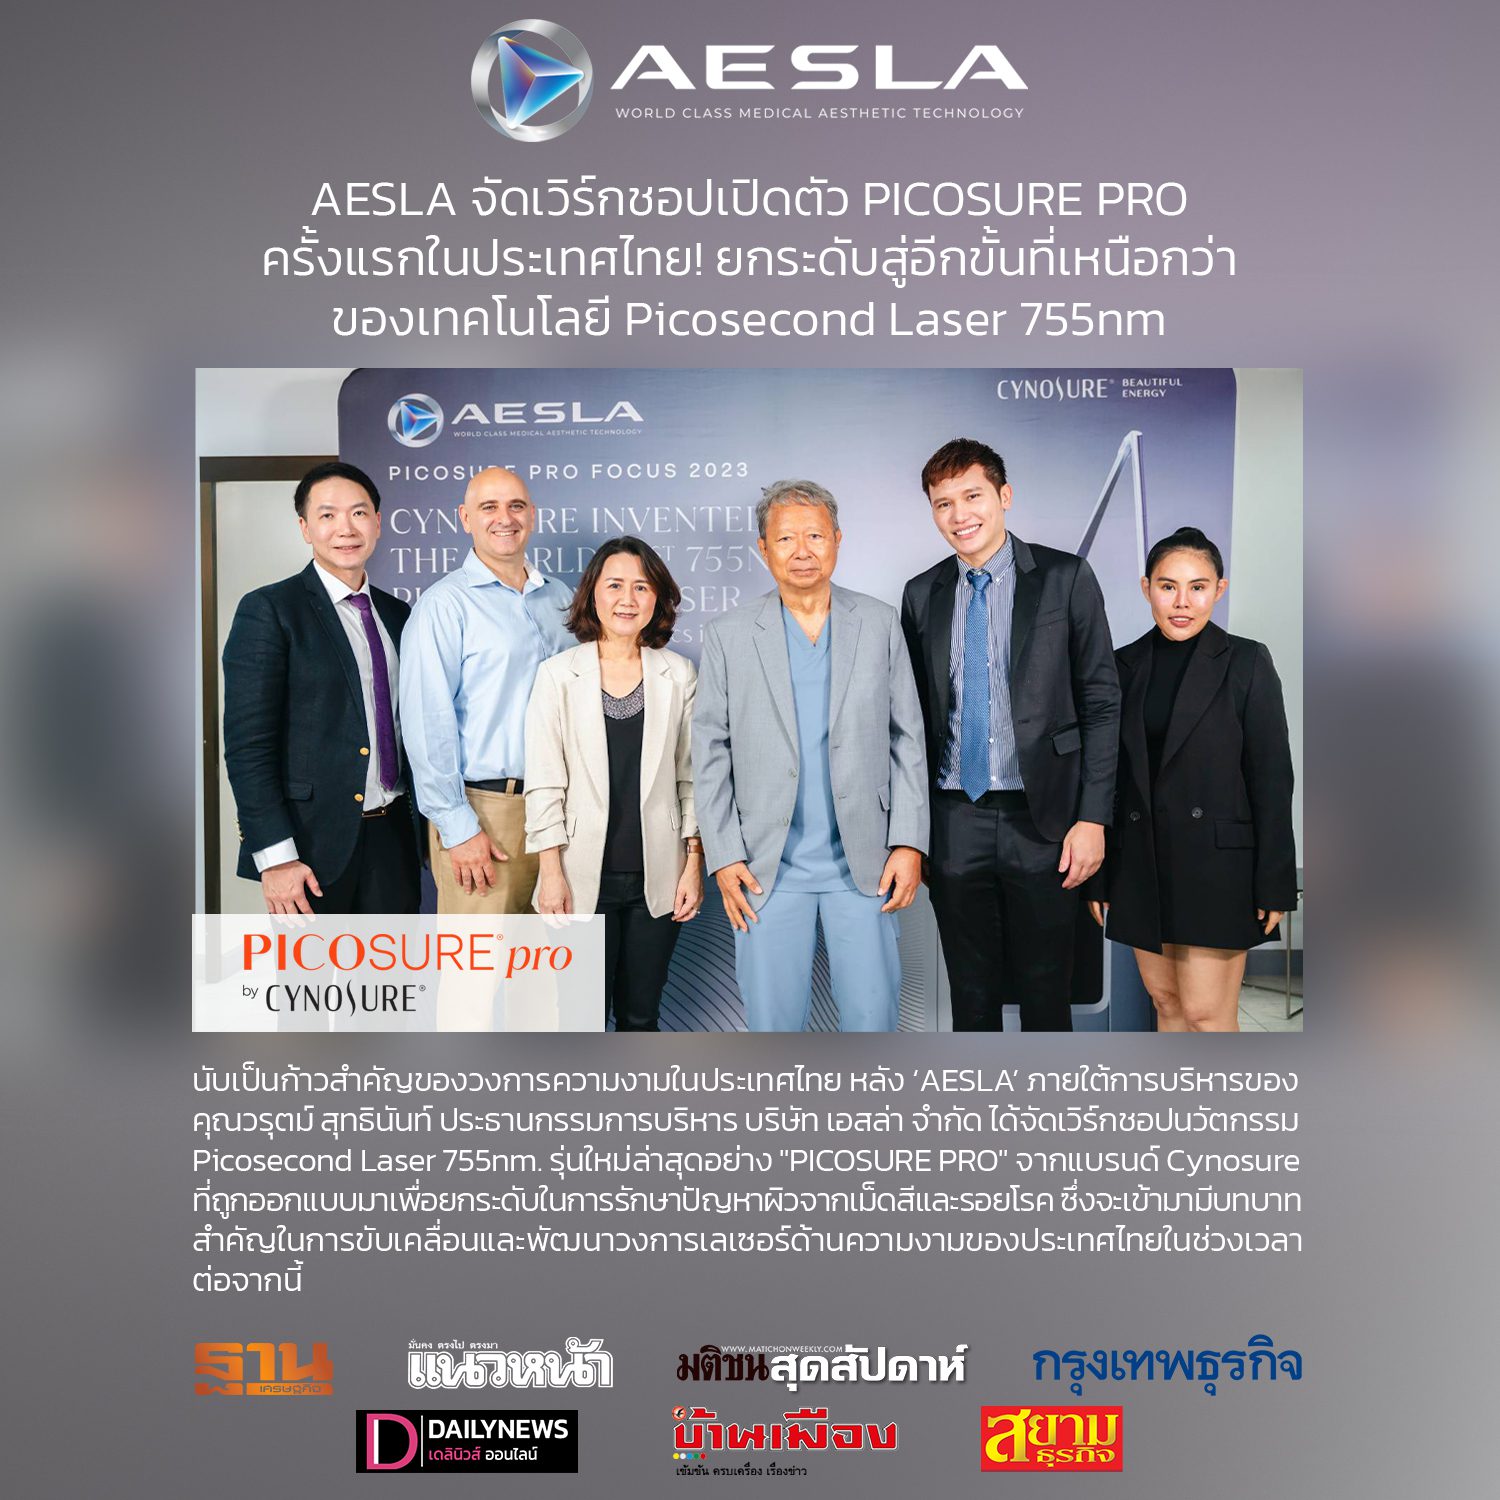 PicoSure Pro focus group at Hua Hin, Thailand